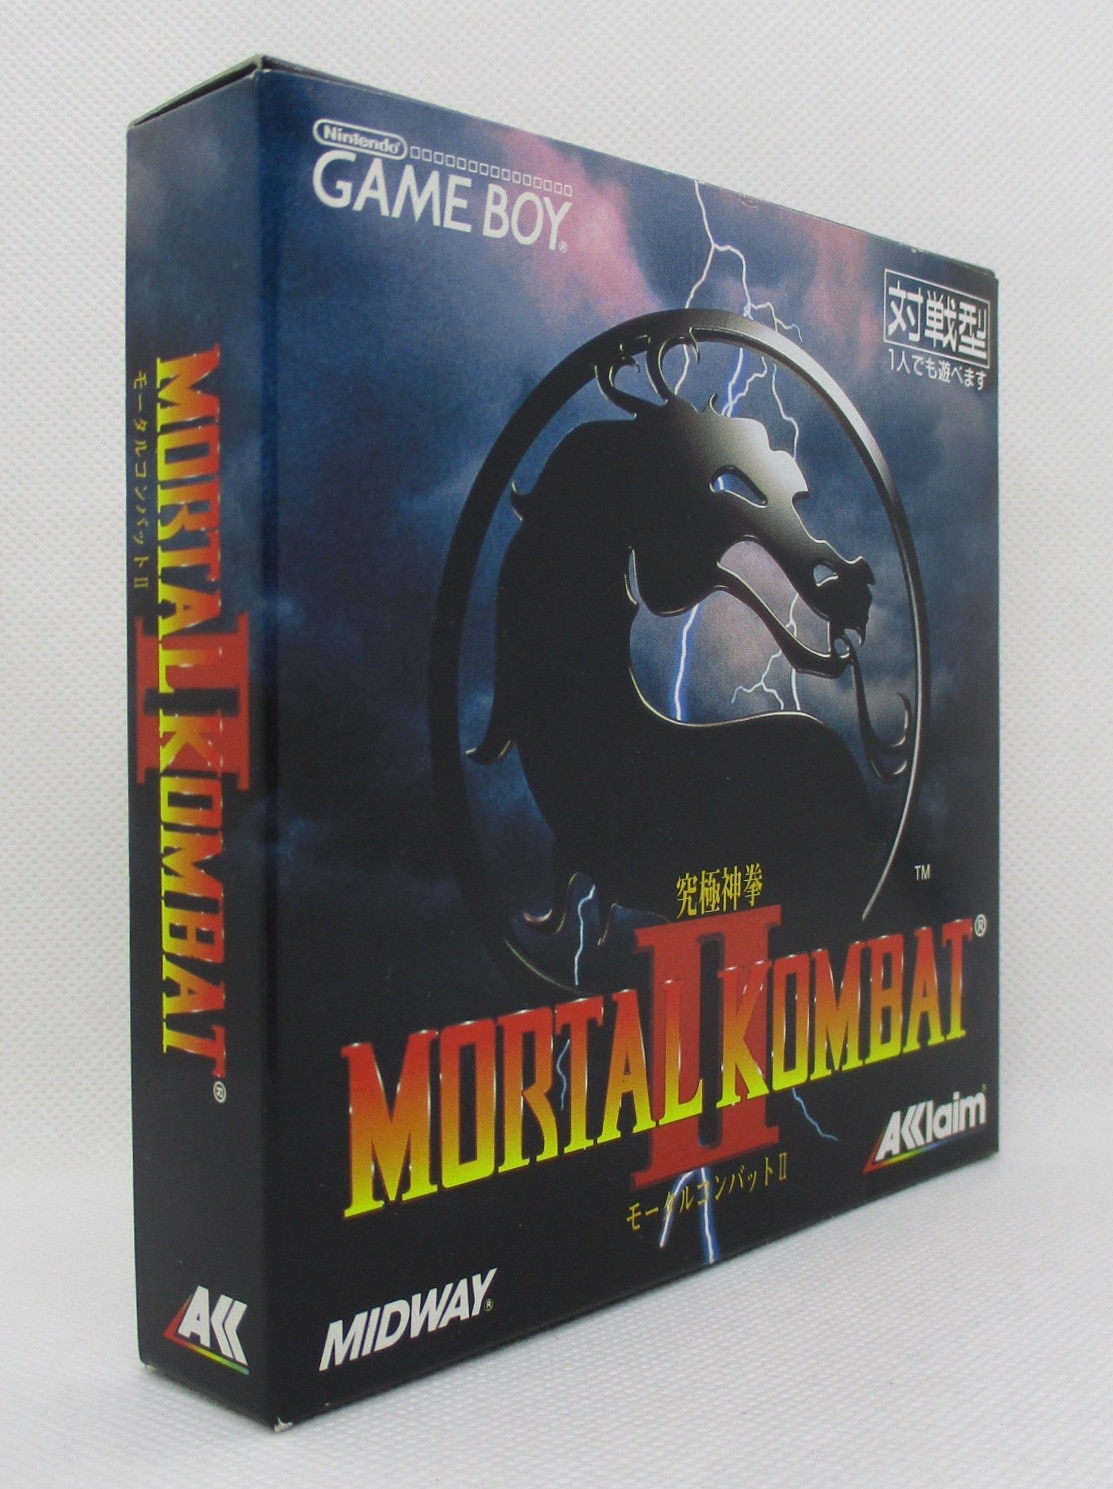 ゲームボーイ 究極神拳 モータルコンバットII Mortal Kombat | neumi.it